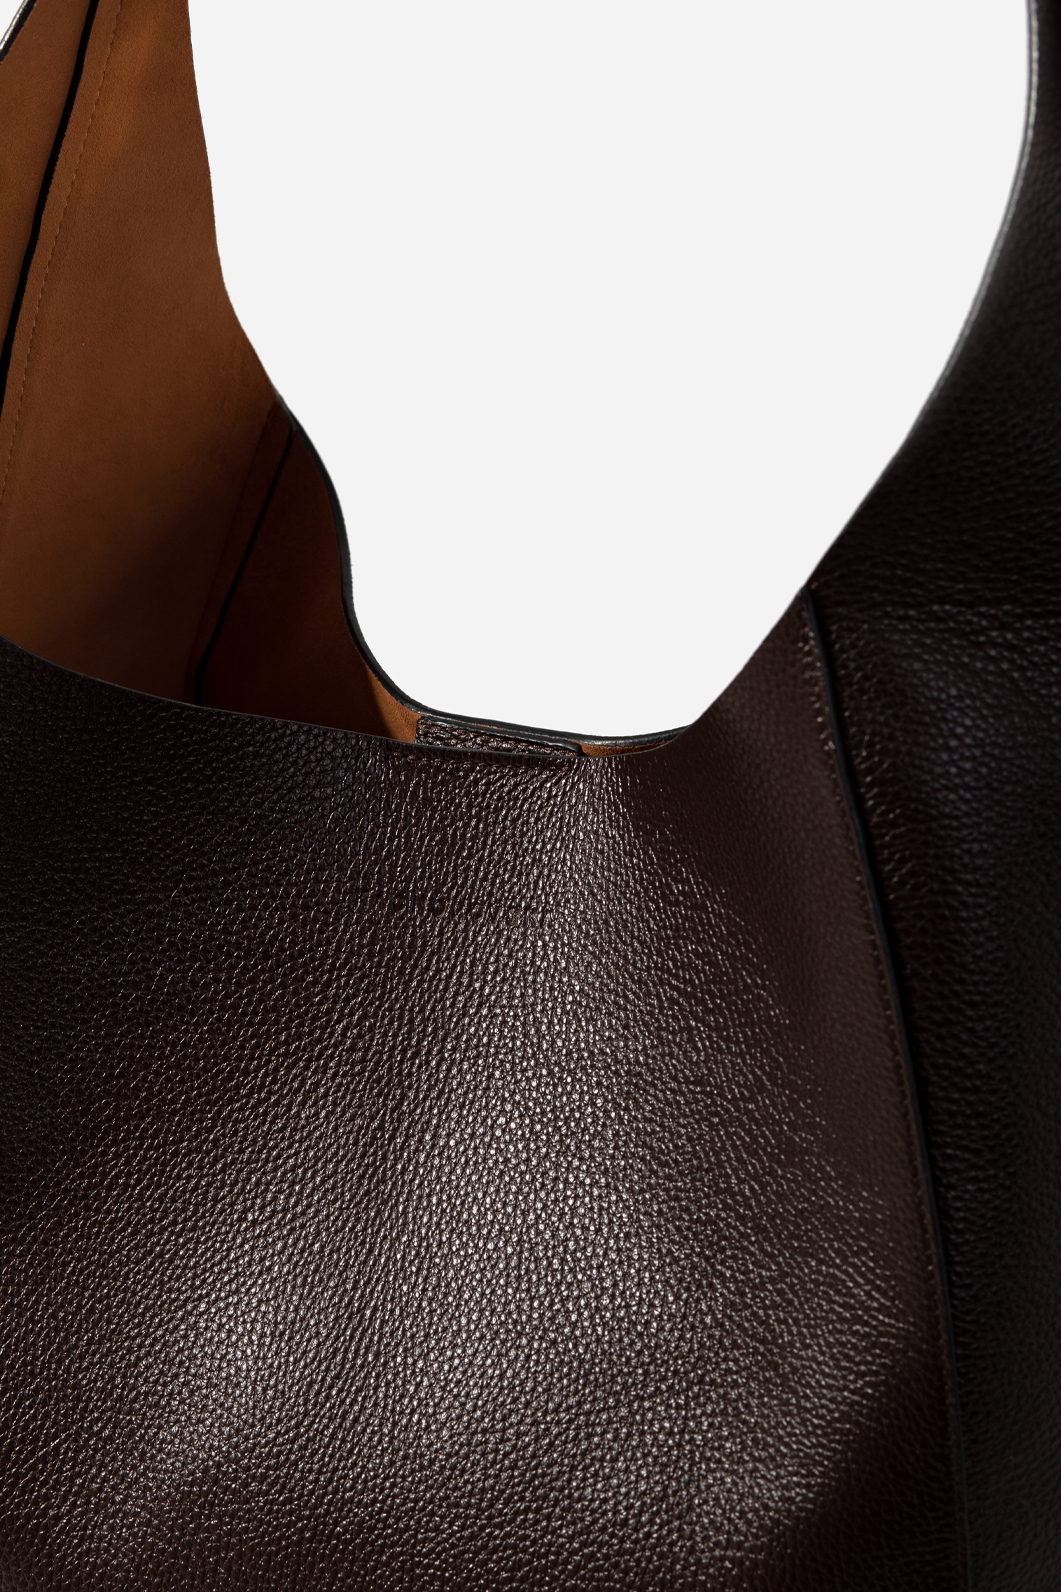 TASHA сумка-хобо темно-коричнева фактурна